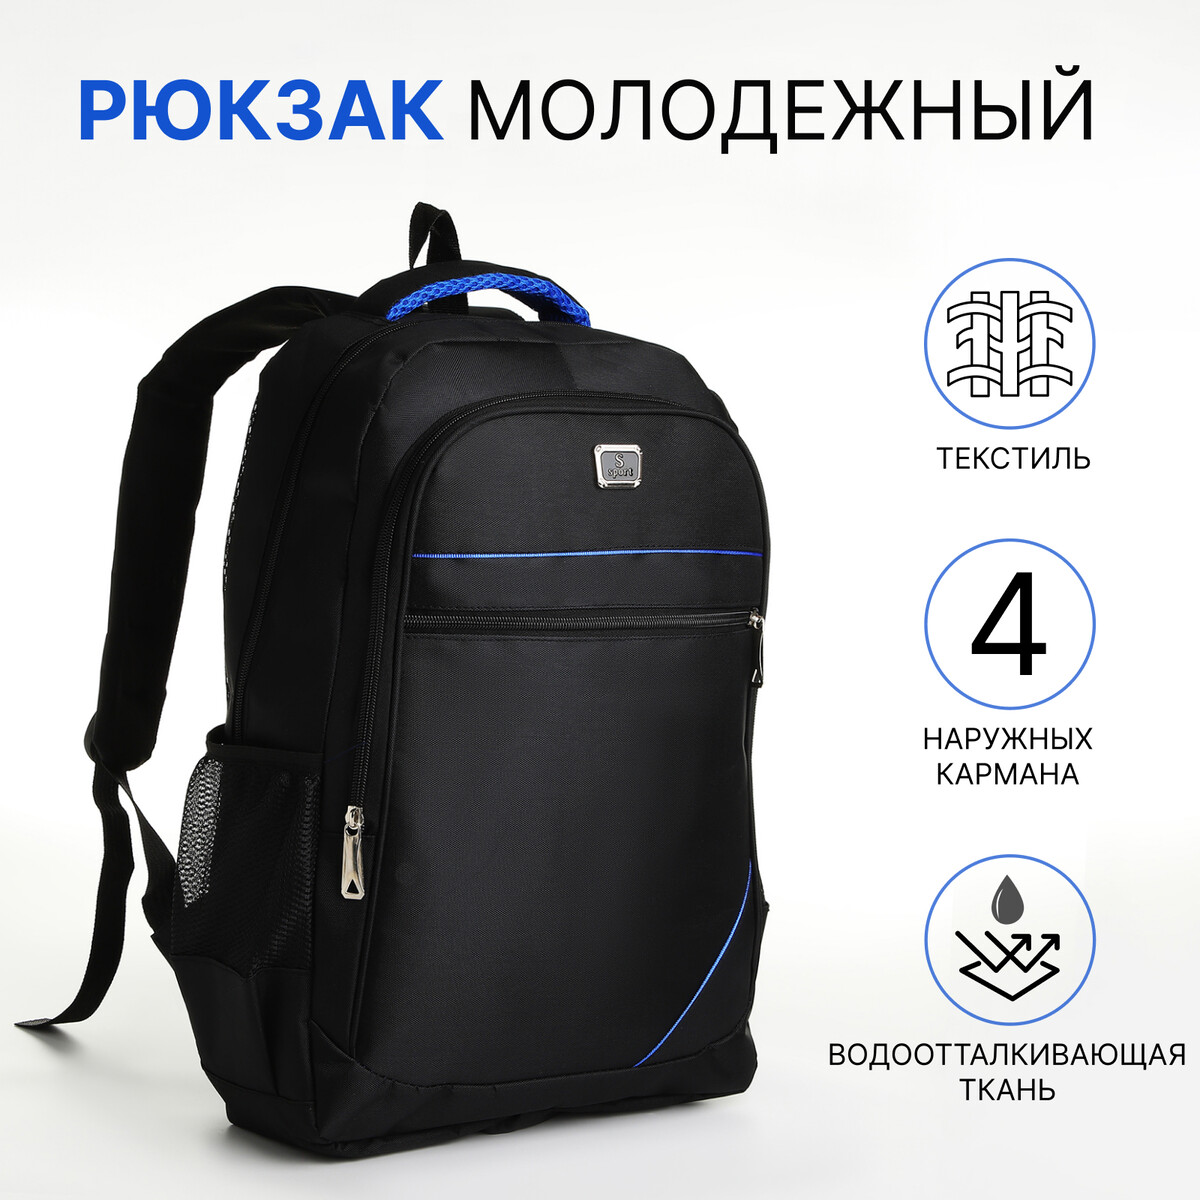 Рюкзак молодежный из текстиля на молнии, 4 кармана, цвет черный/синий молодежный рюкзак grizzly rd 444 2 2 синий